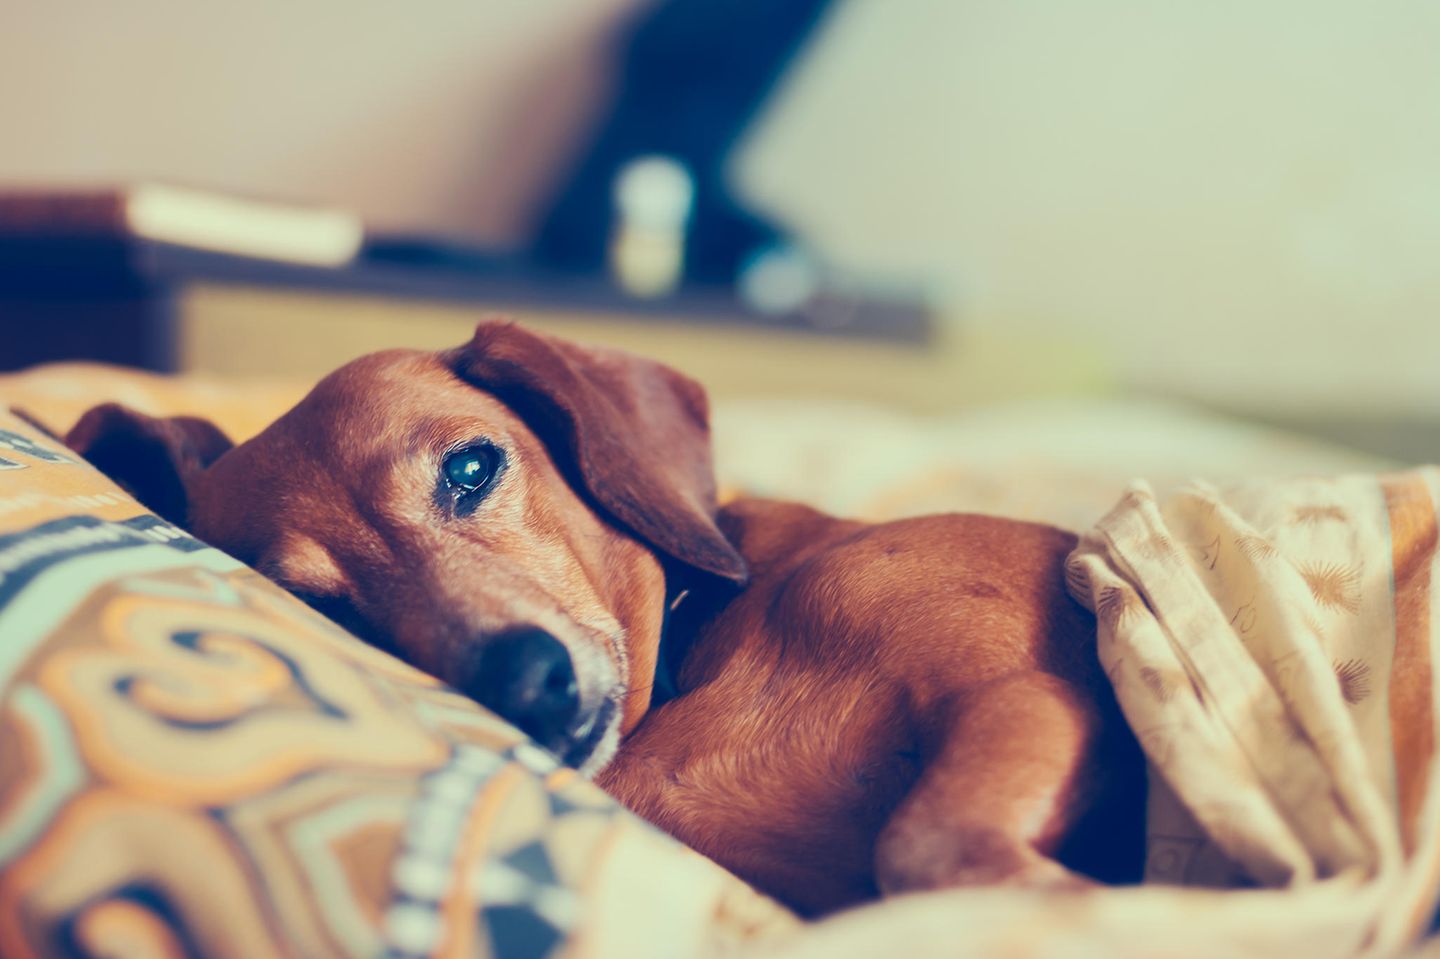 Kent Problemer brydning Hund einschläfern - muss mein Tier leiden? | BRIGITTE.de